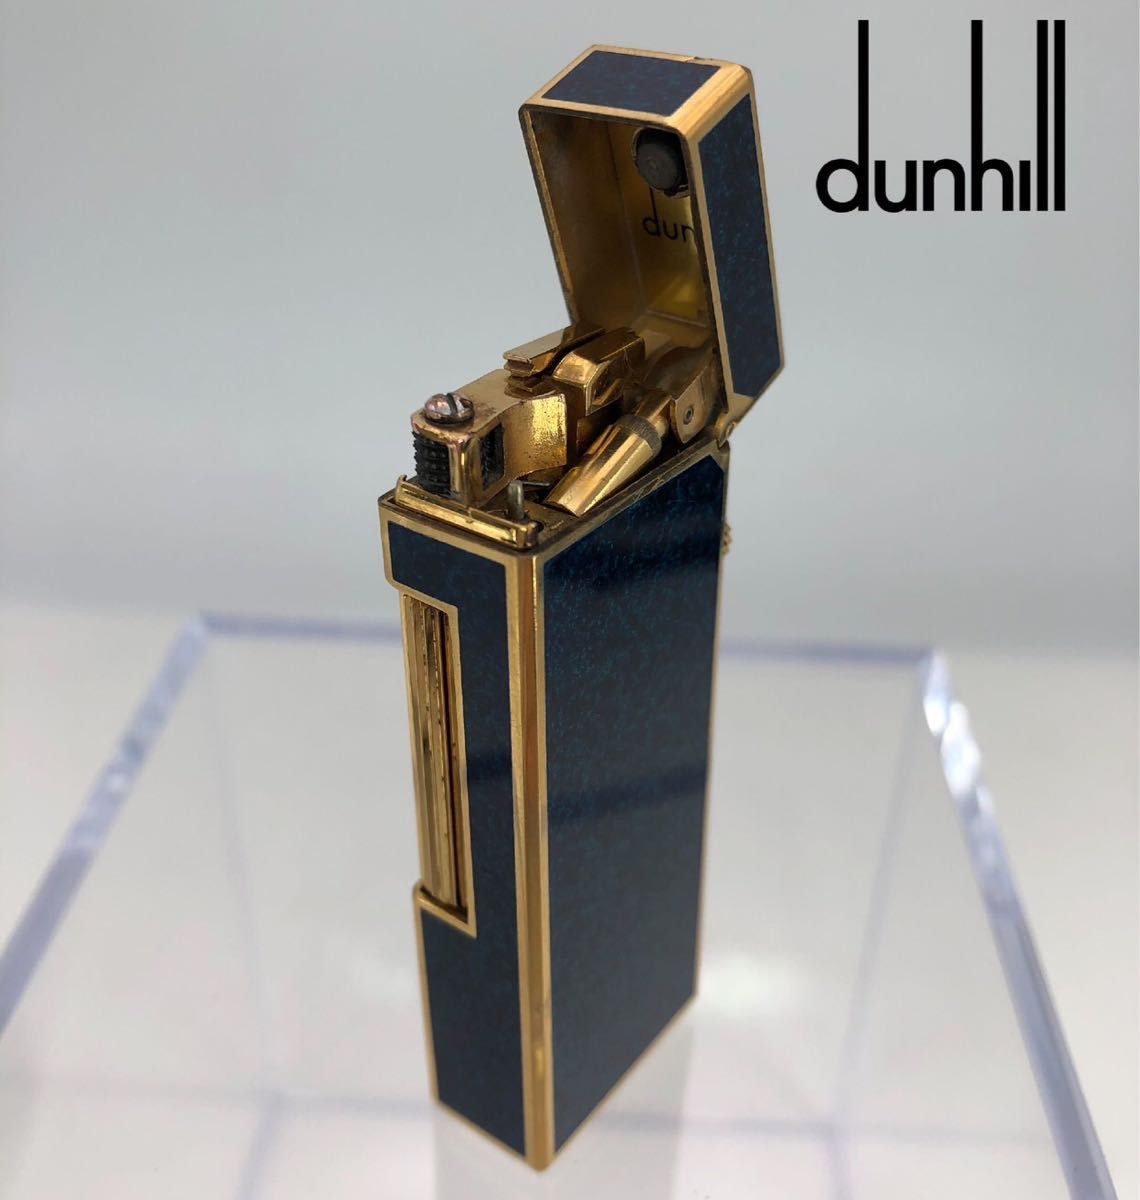 dunhill ダンヒル ローラー ガスライター ライター ラメ ブルー